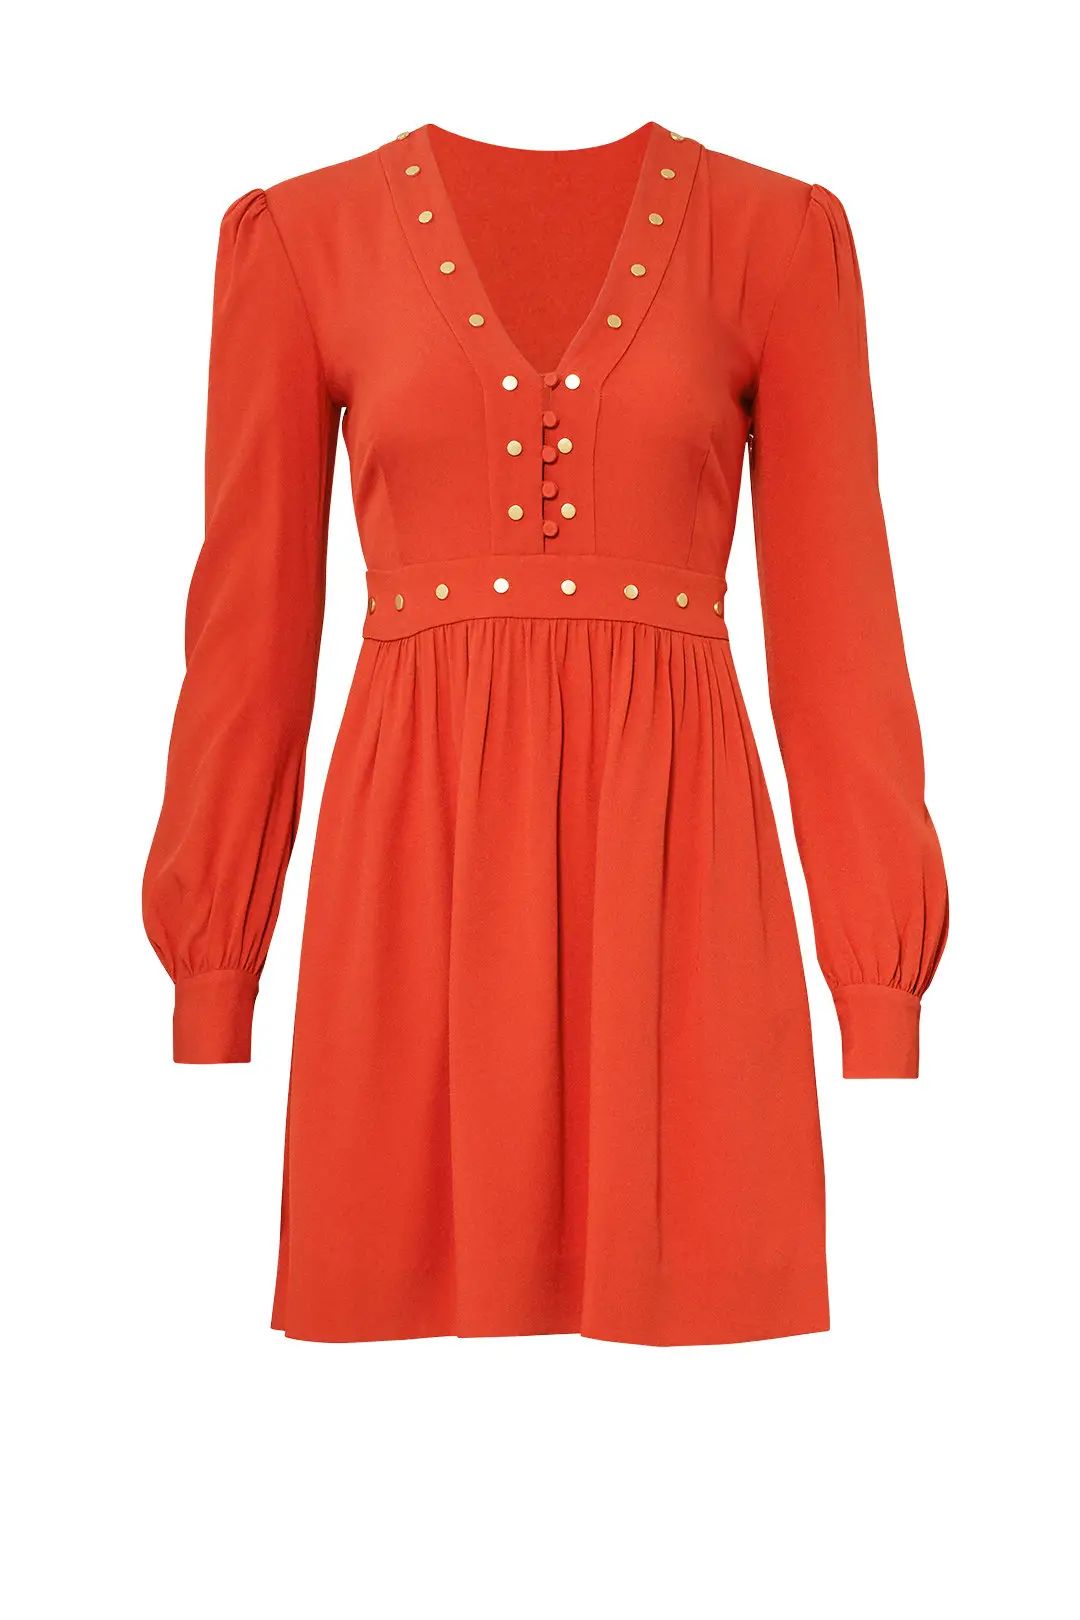 Rachel Zoe Orange Neda Dress | Rent The Runway